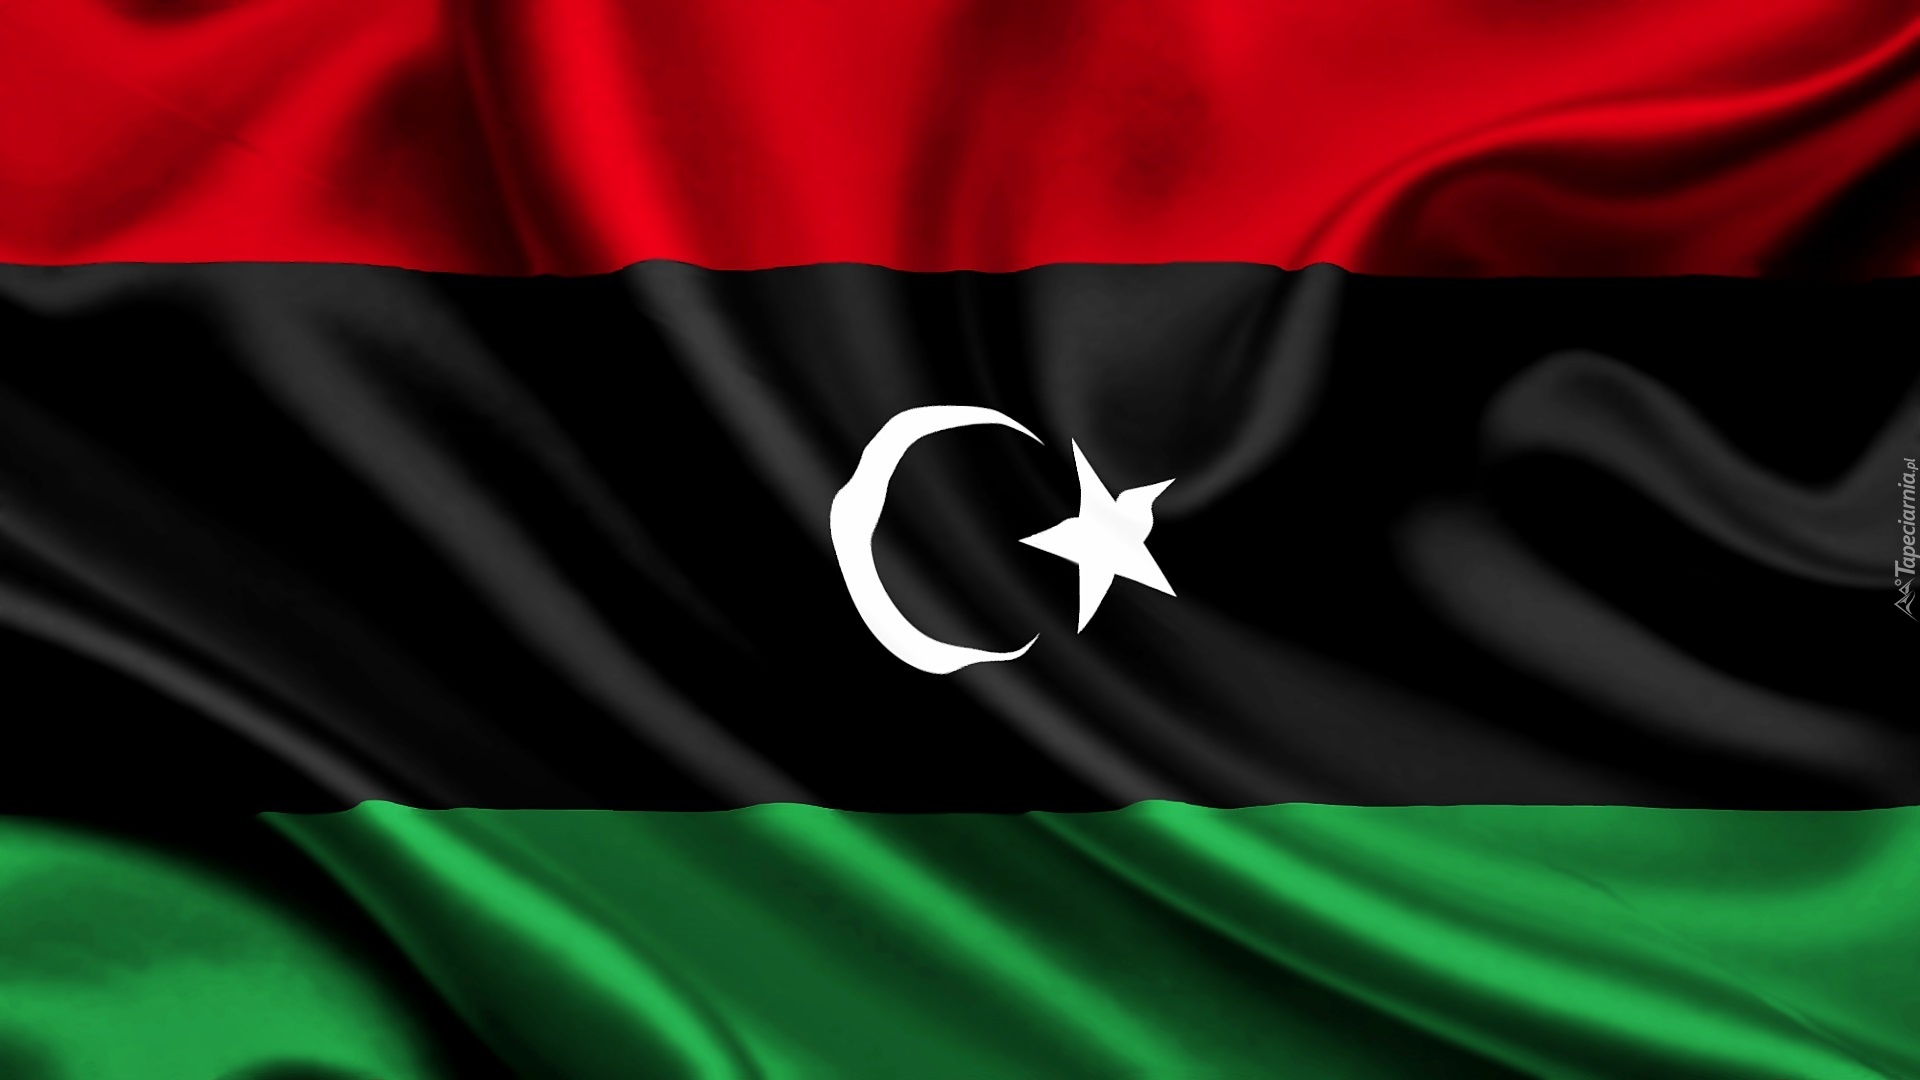 Flaga, Libii